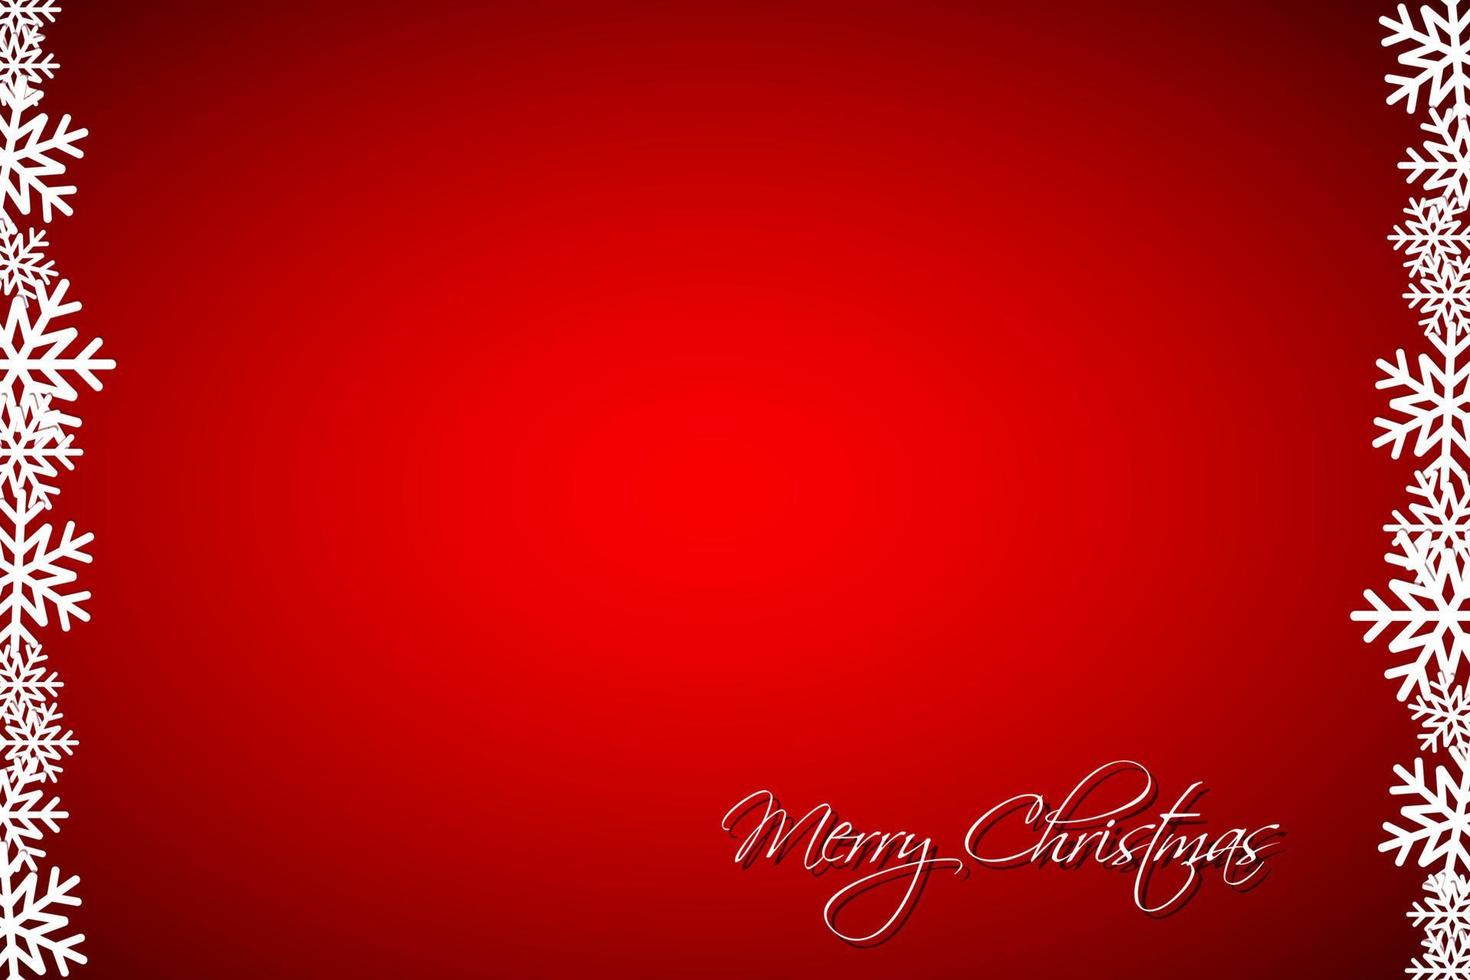 Fondo rojo navideño con copos de nieve, tarjeta navideña simple, ilustración vectorial moderna, feliz navidad vector